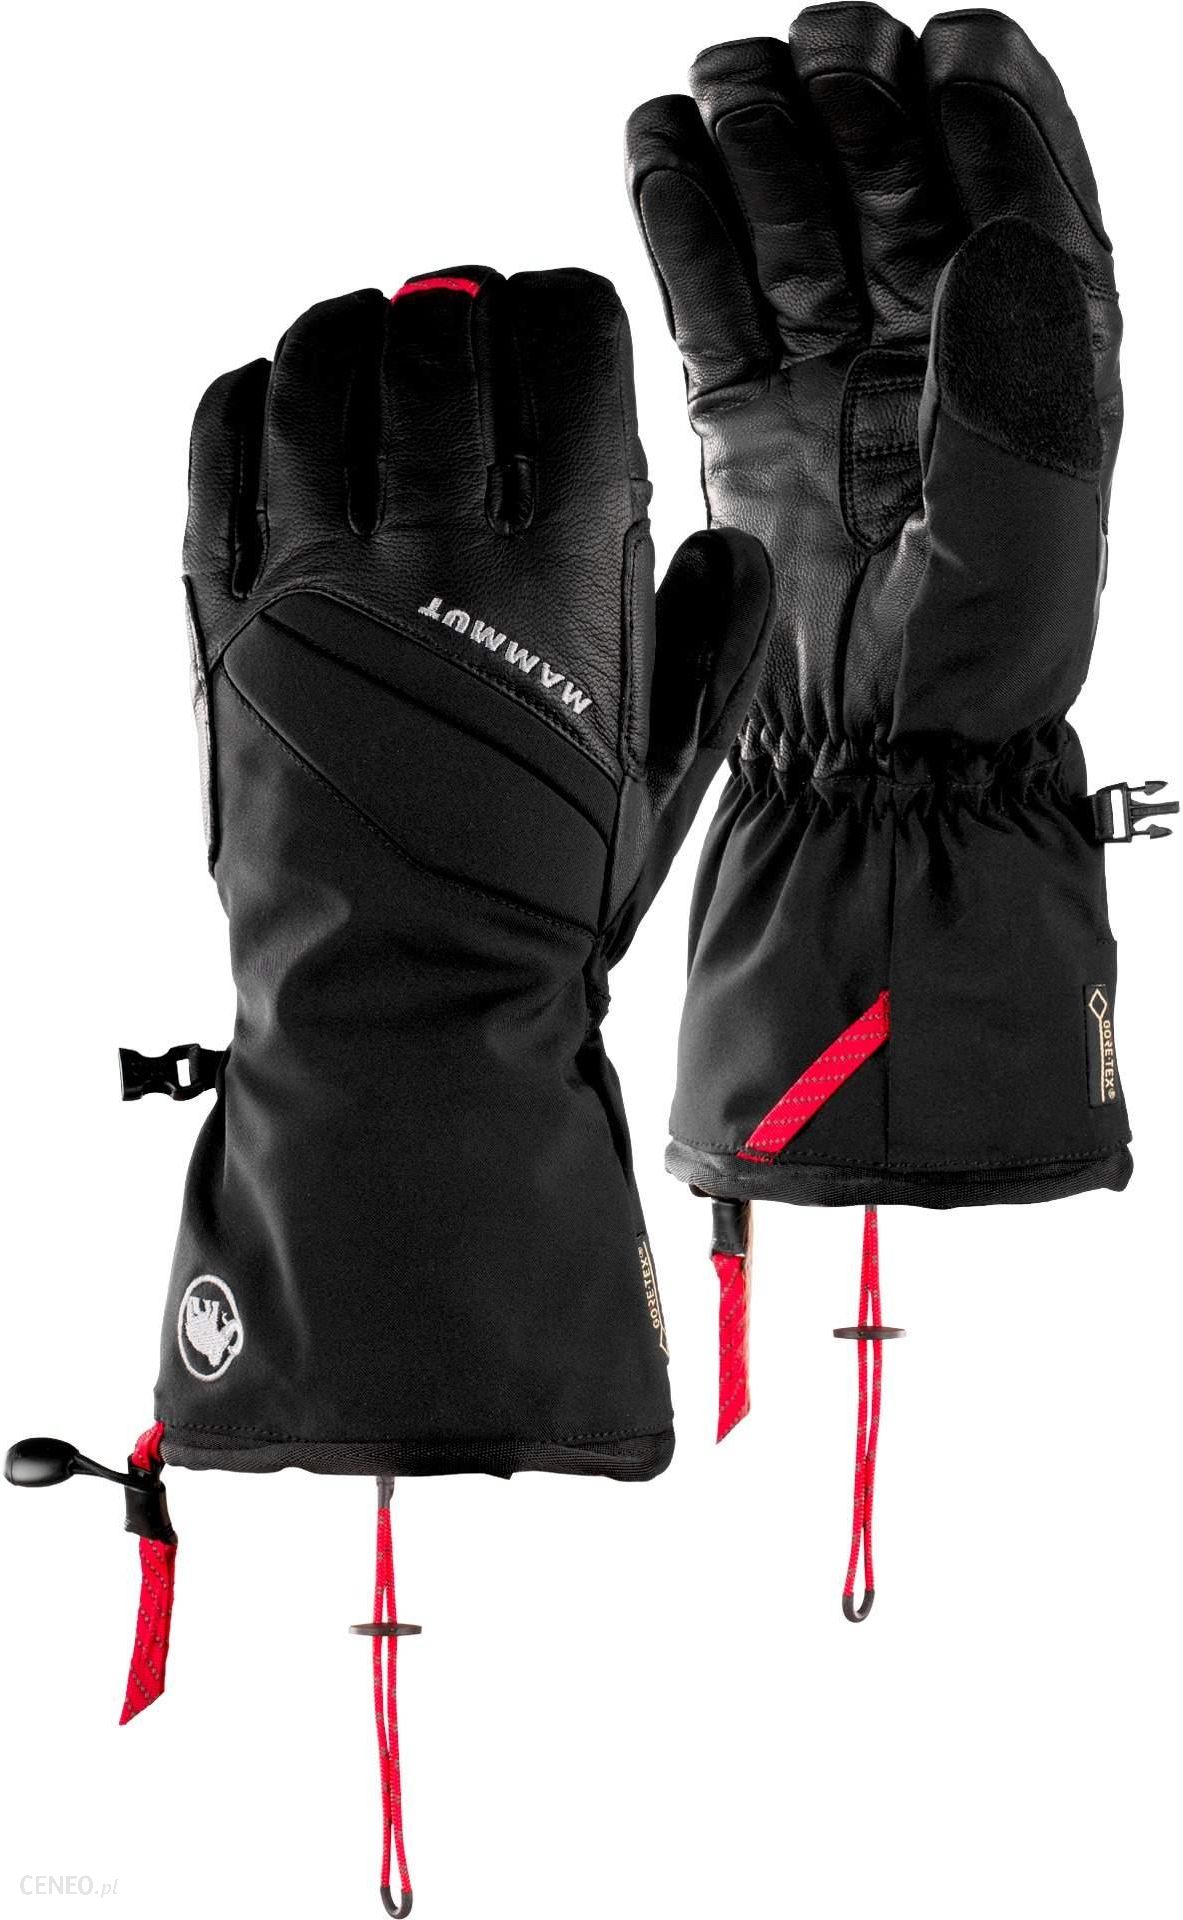 Mammut Meron Thermo 2W1 Glove 10 Black - Ceny i opinie - Ceneo.pl